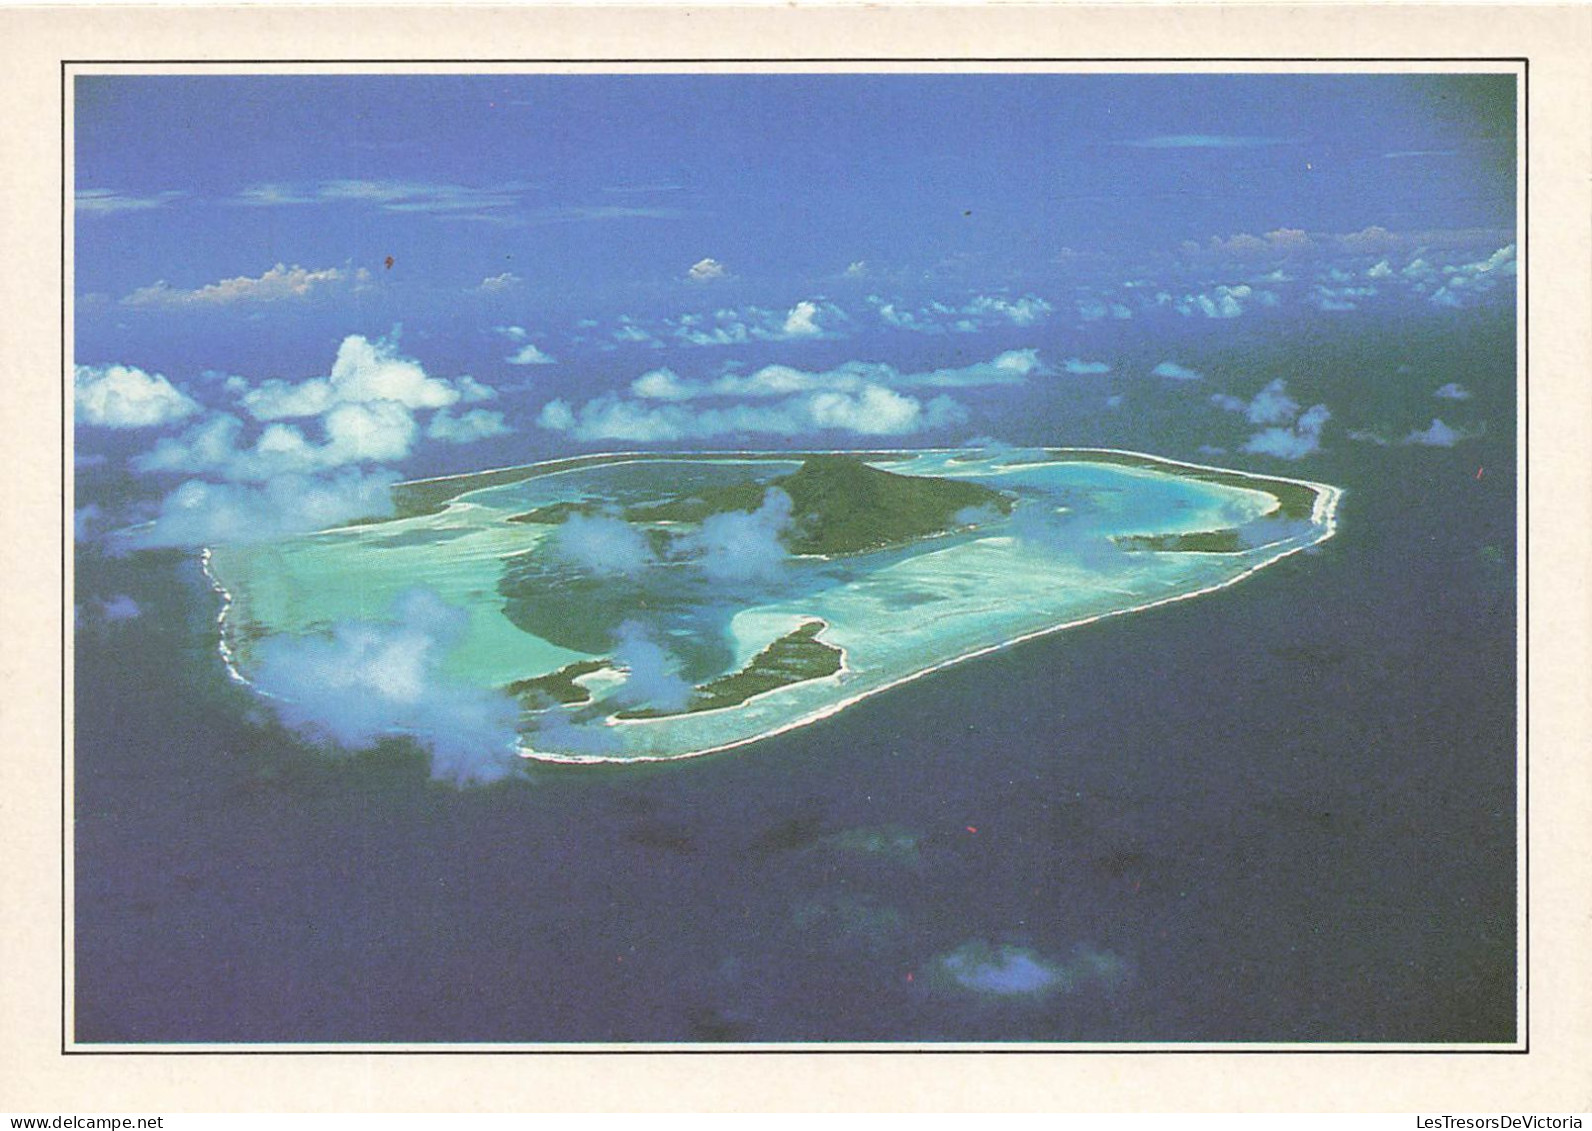 POLYNESIE FRANCAISE - Maupiti - L'île Vue D'avion - Colorisé - Carte Postale - French Polynesia